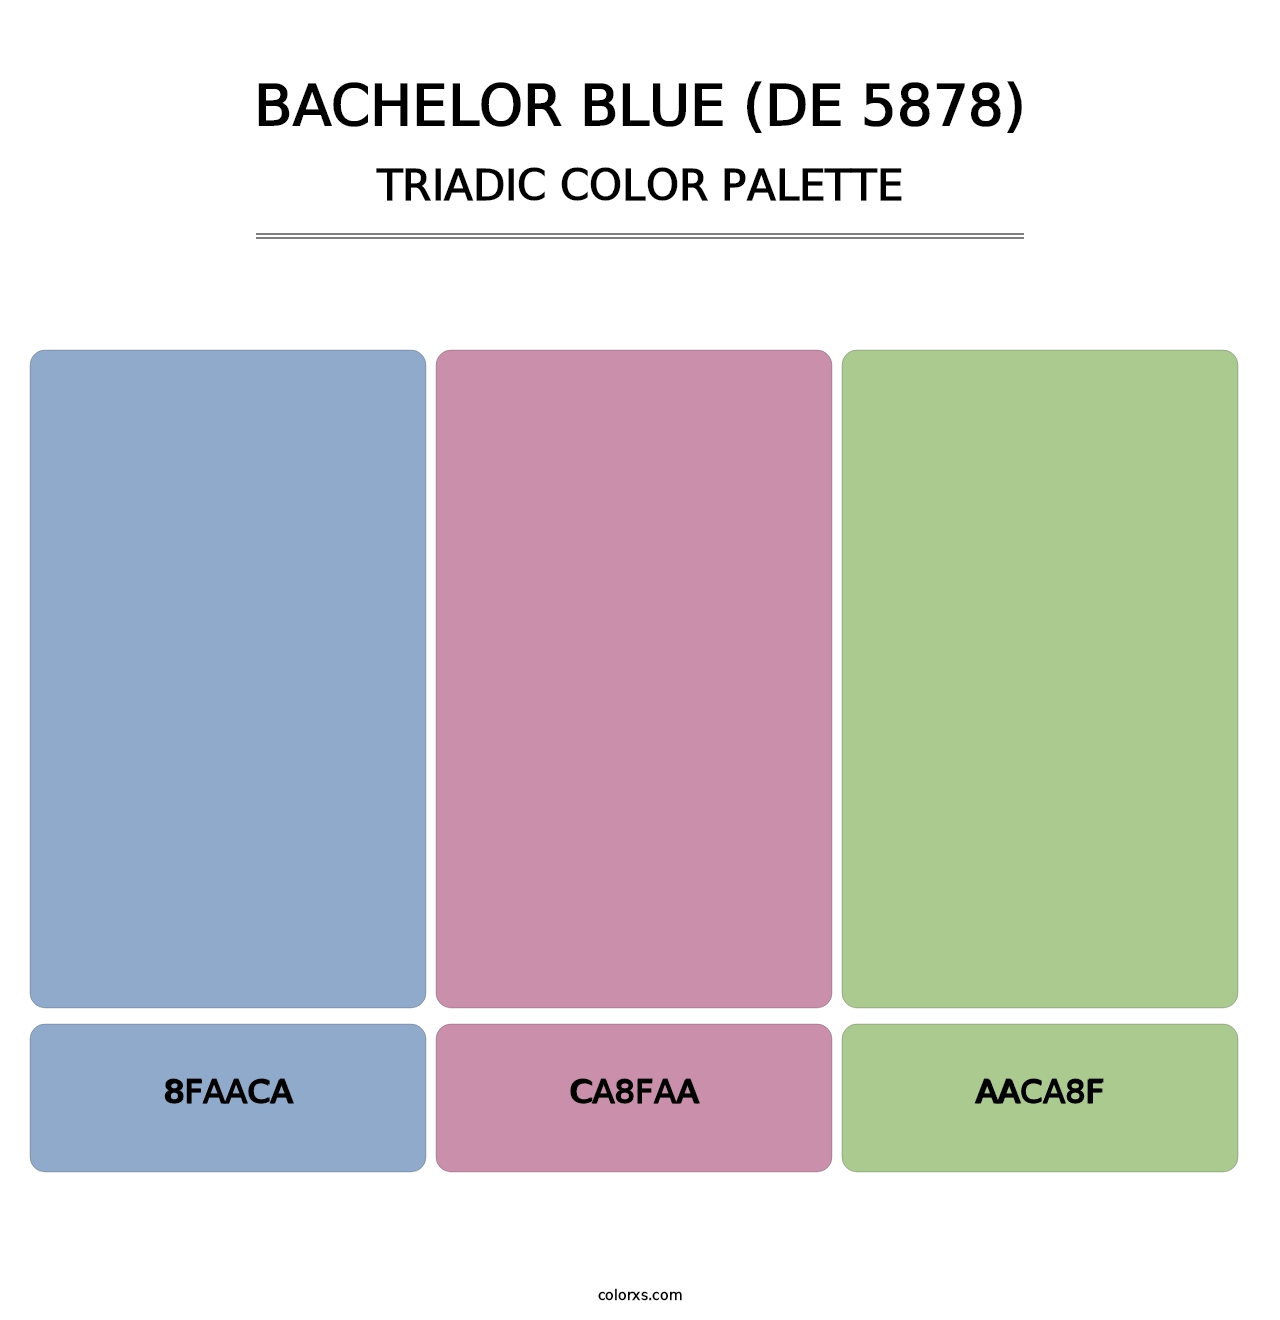 Bachelor Blue (DE 5878) - Triadic Color Palette